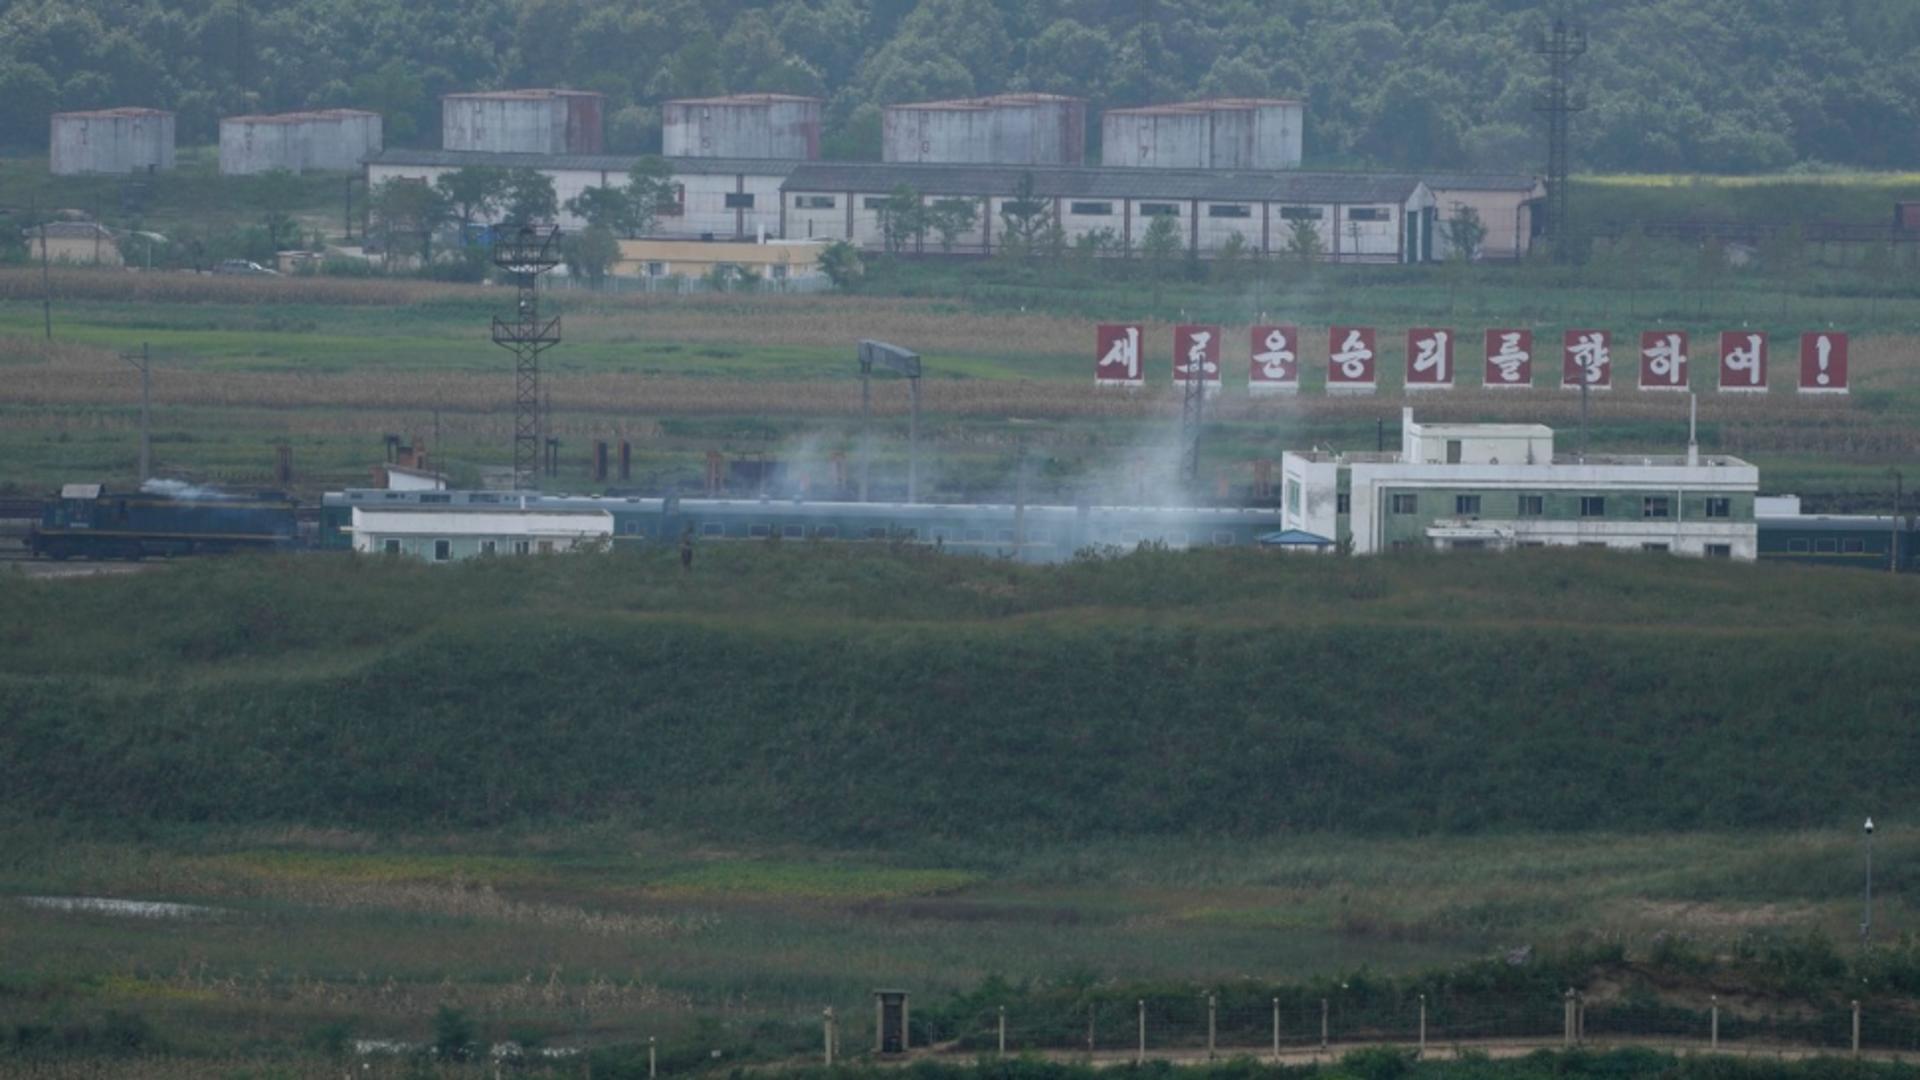 Trenul a fost fotografiat la granita nordică a Coreei cu Federatia Rusă (Profimedia)